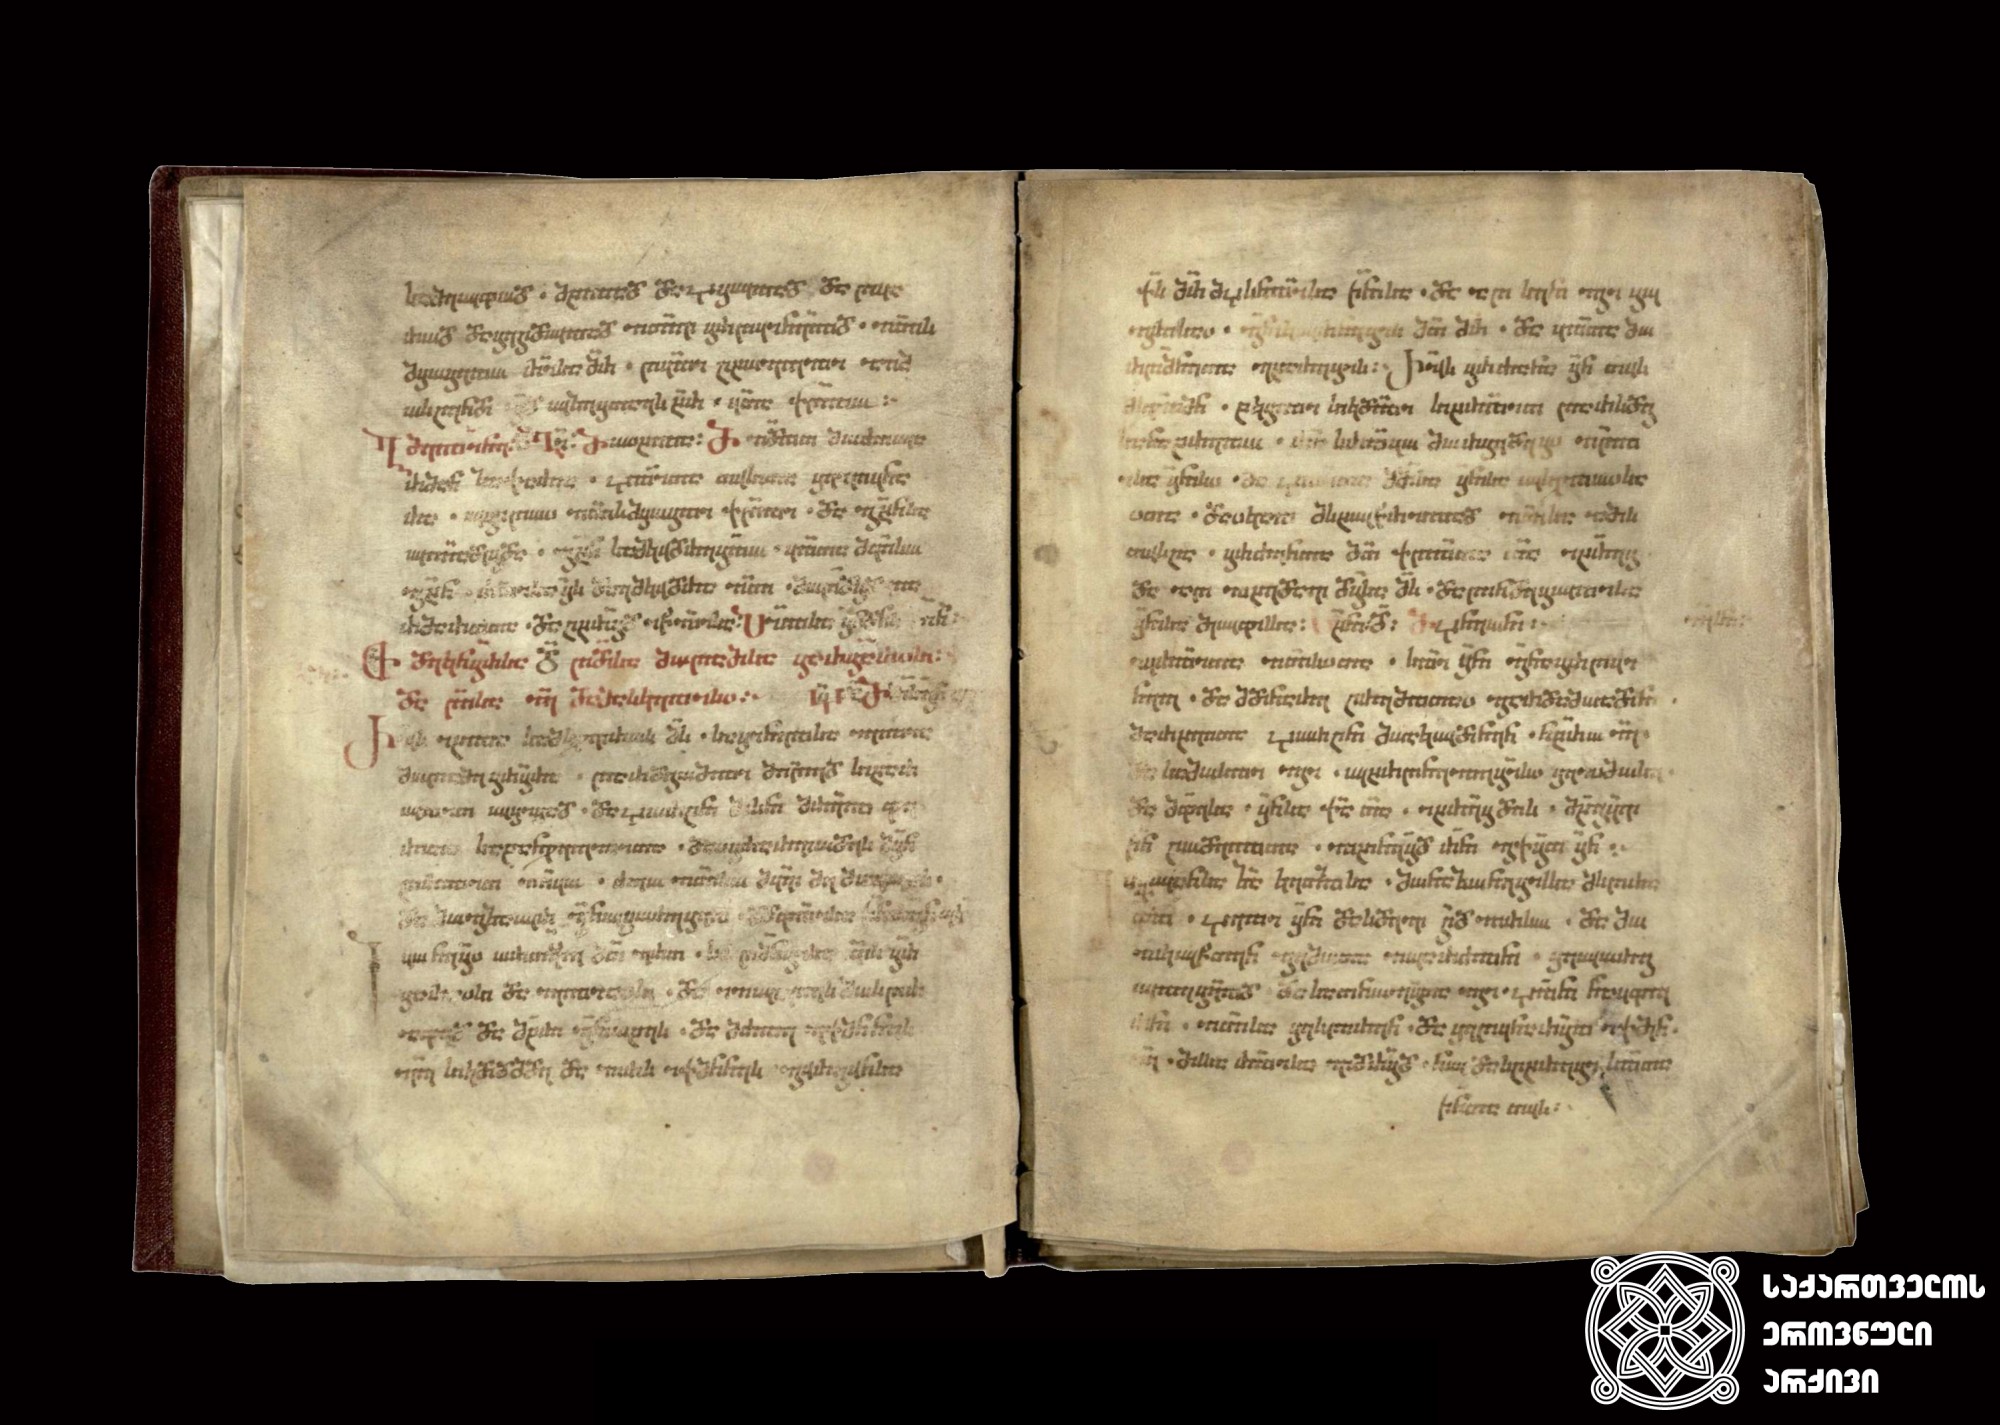 ნუსხური. გამოკრებილი სახარებანი, XIV-XV საუკუნეები. <br>
Nuskhuri script. Selected Passages from Gospel, XIV-XV centuries.